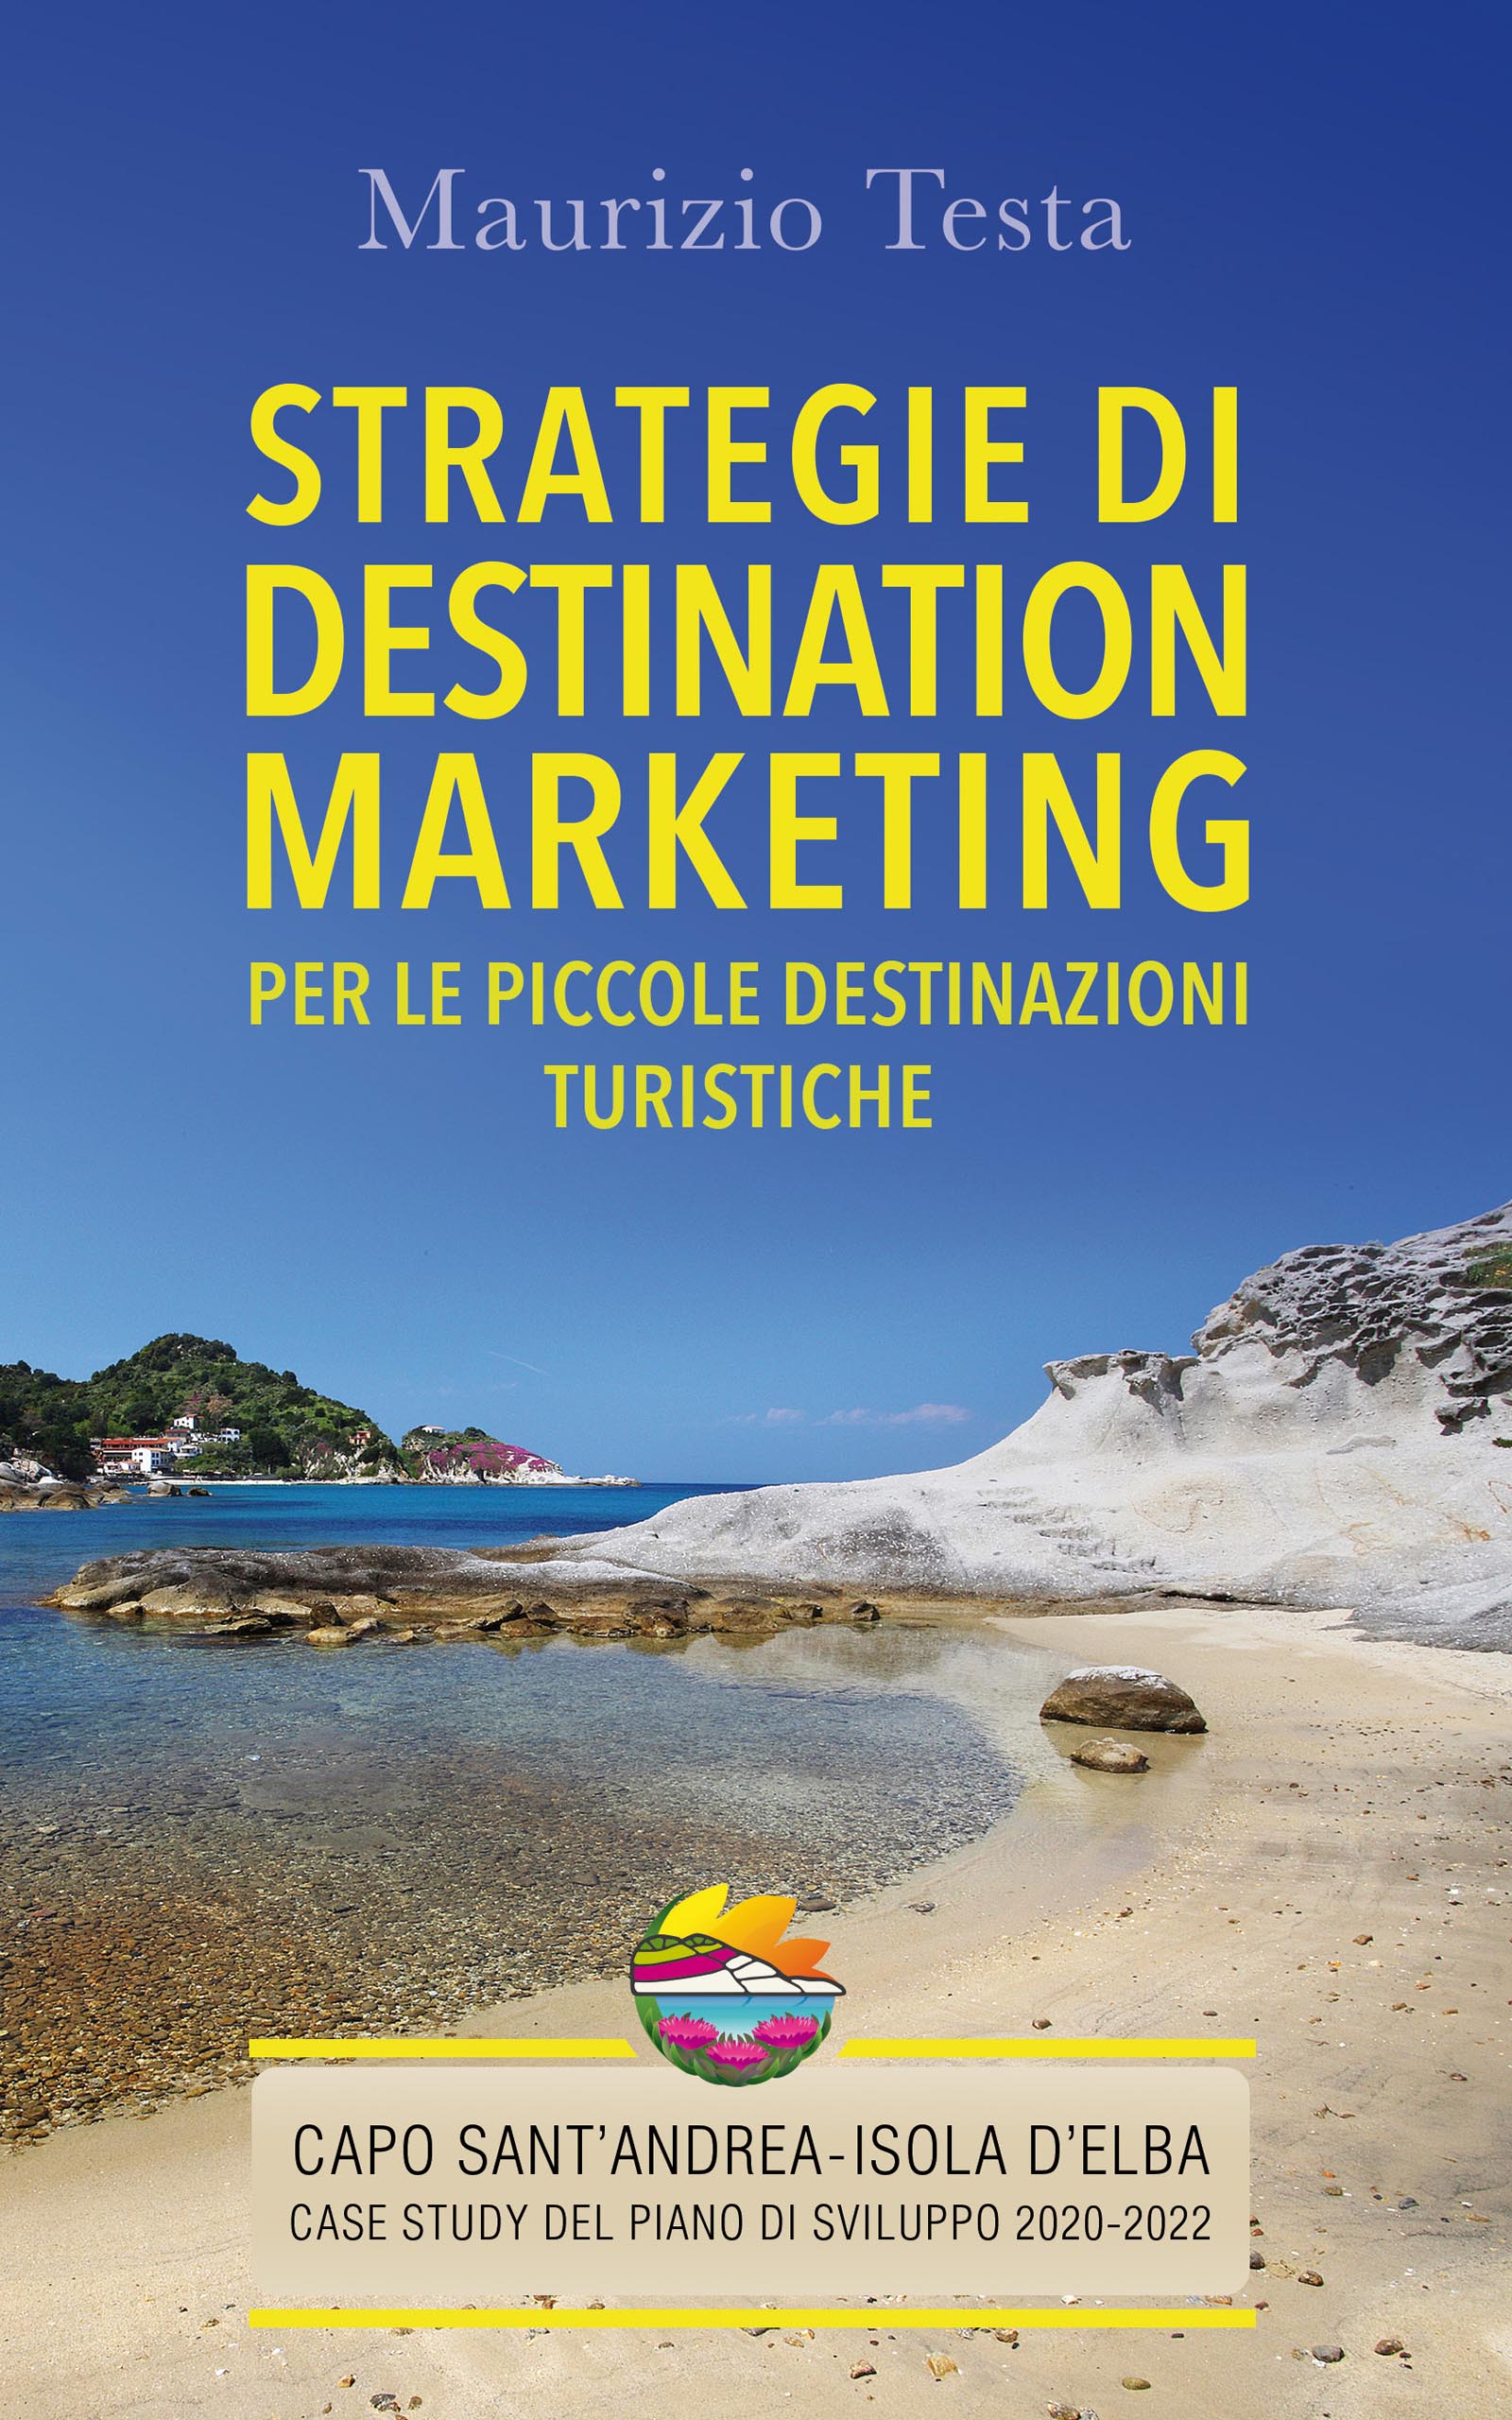 Destination marketing